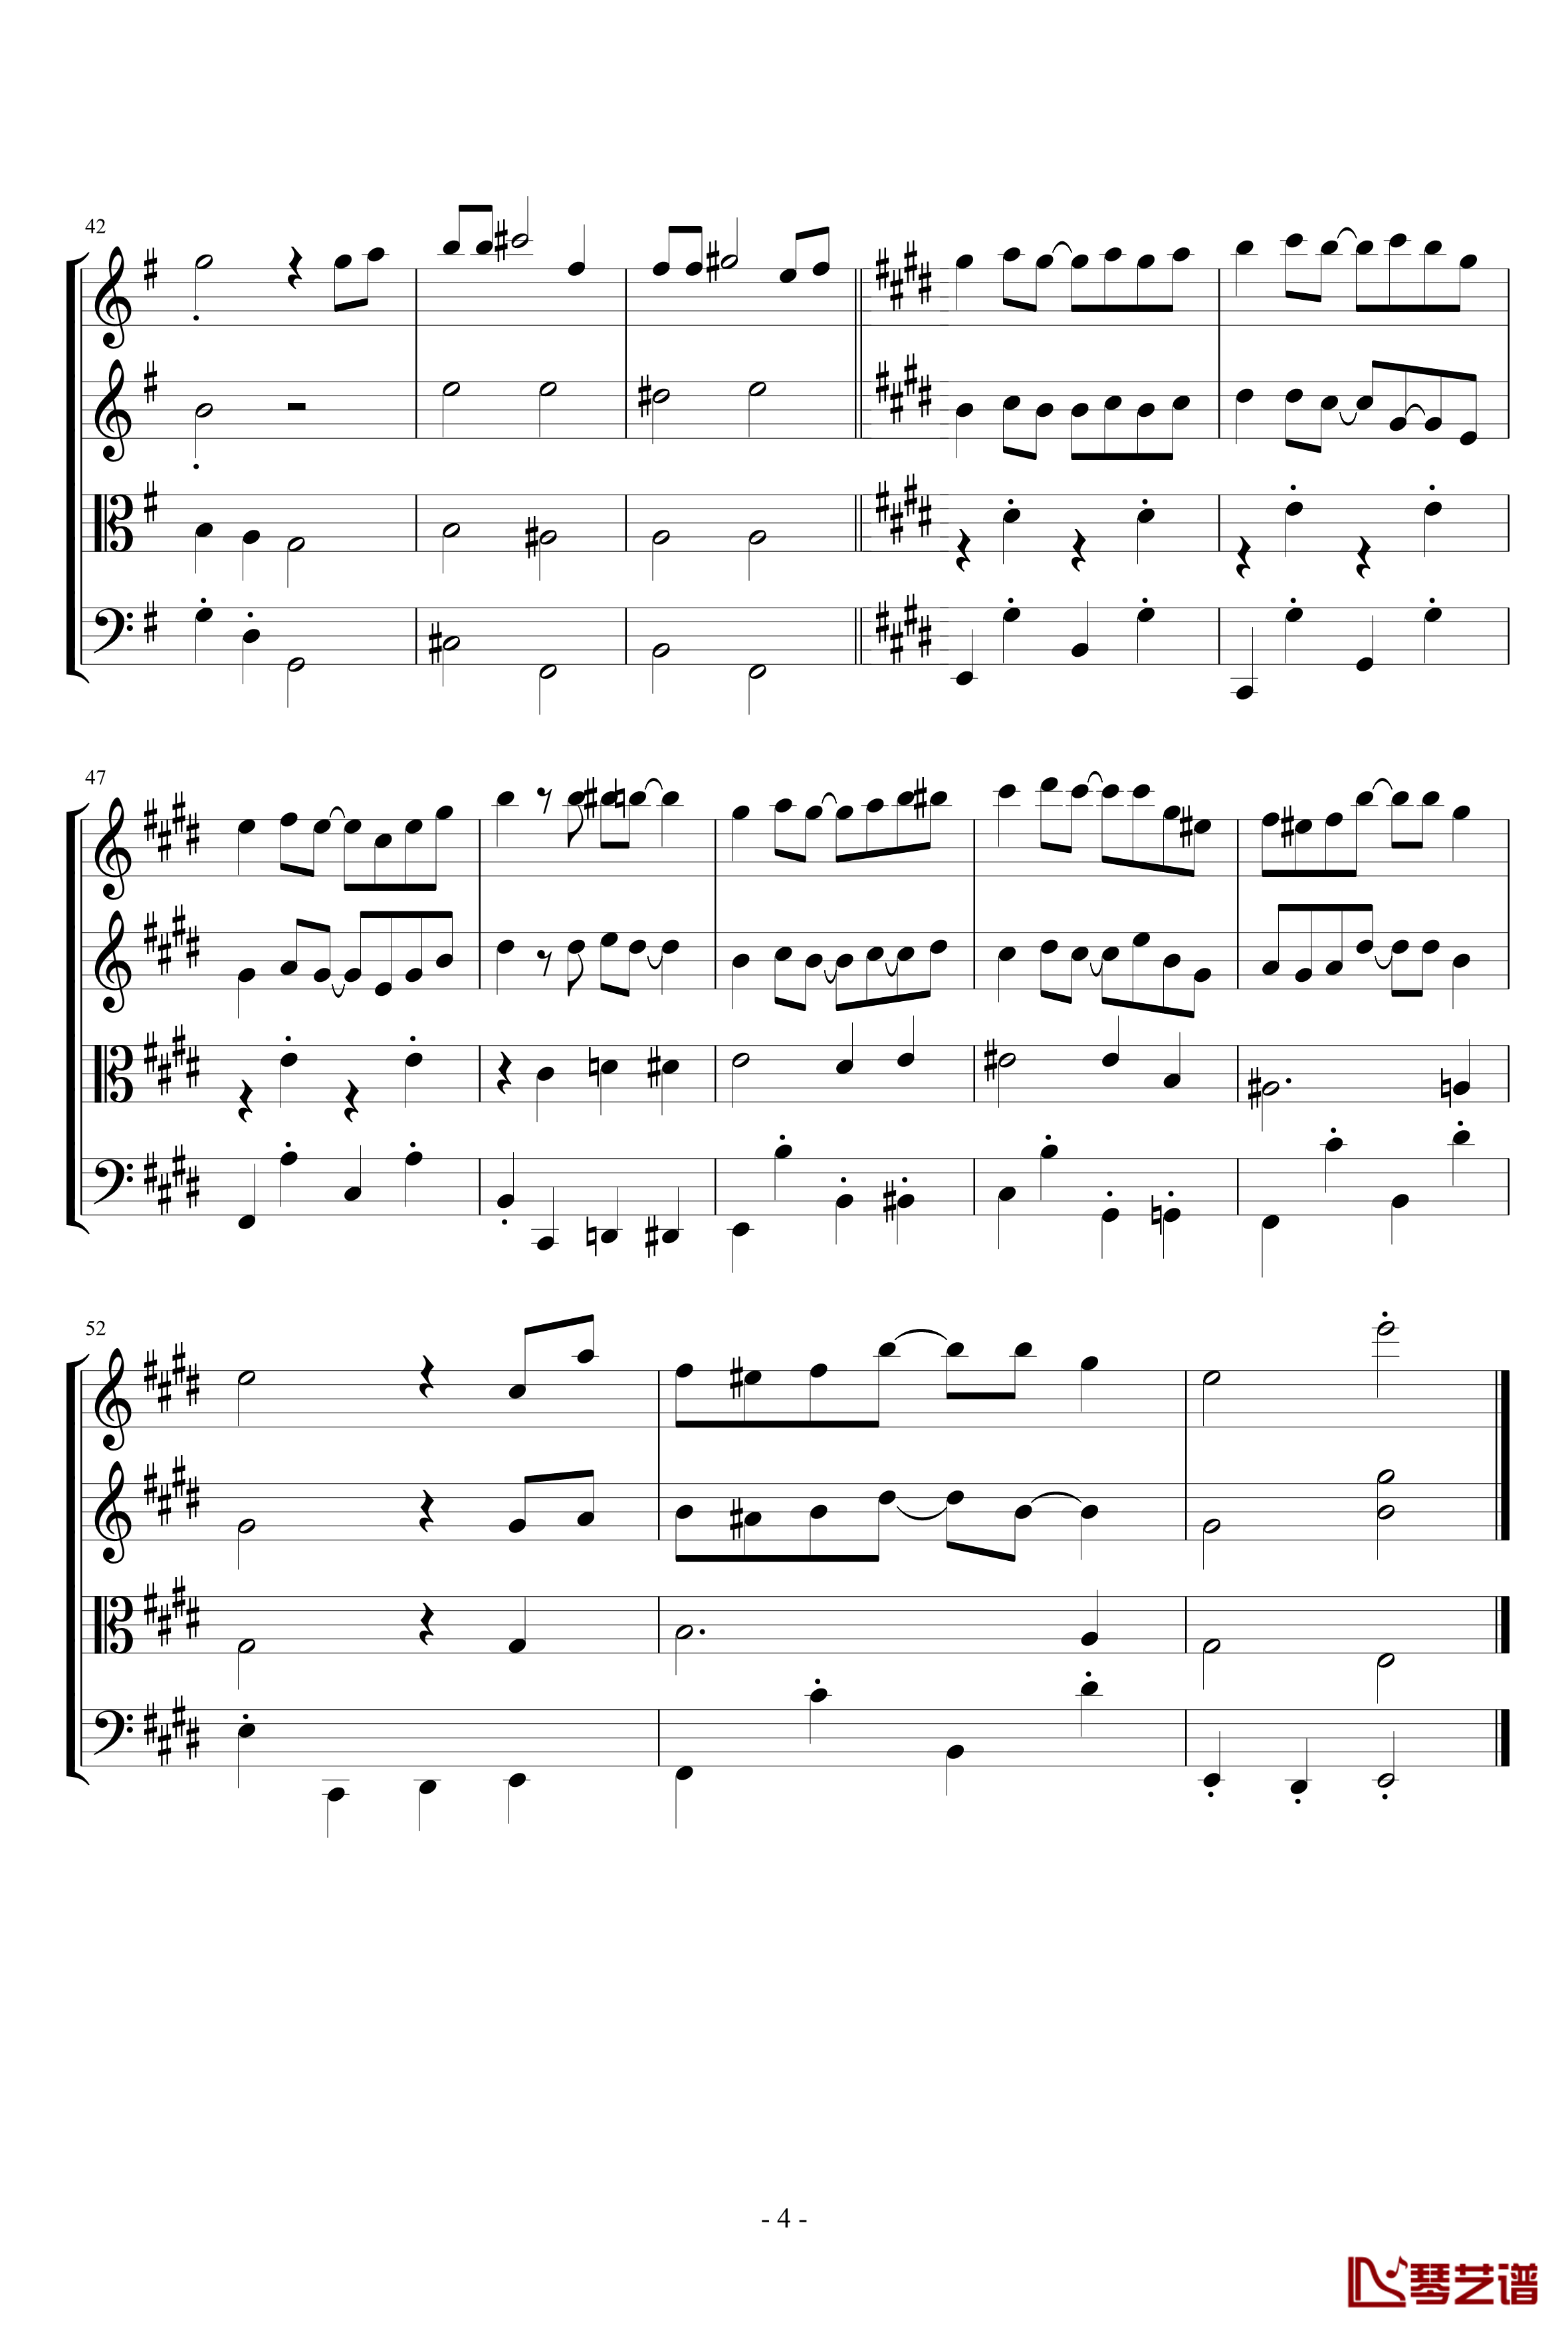 苏格兰垂耳兔钢琴谱-四重奏版-EdwardLeon4